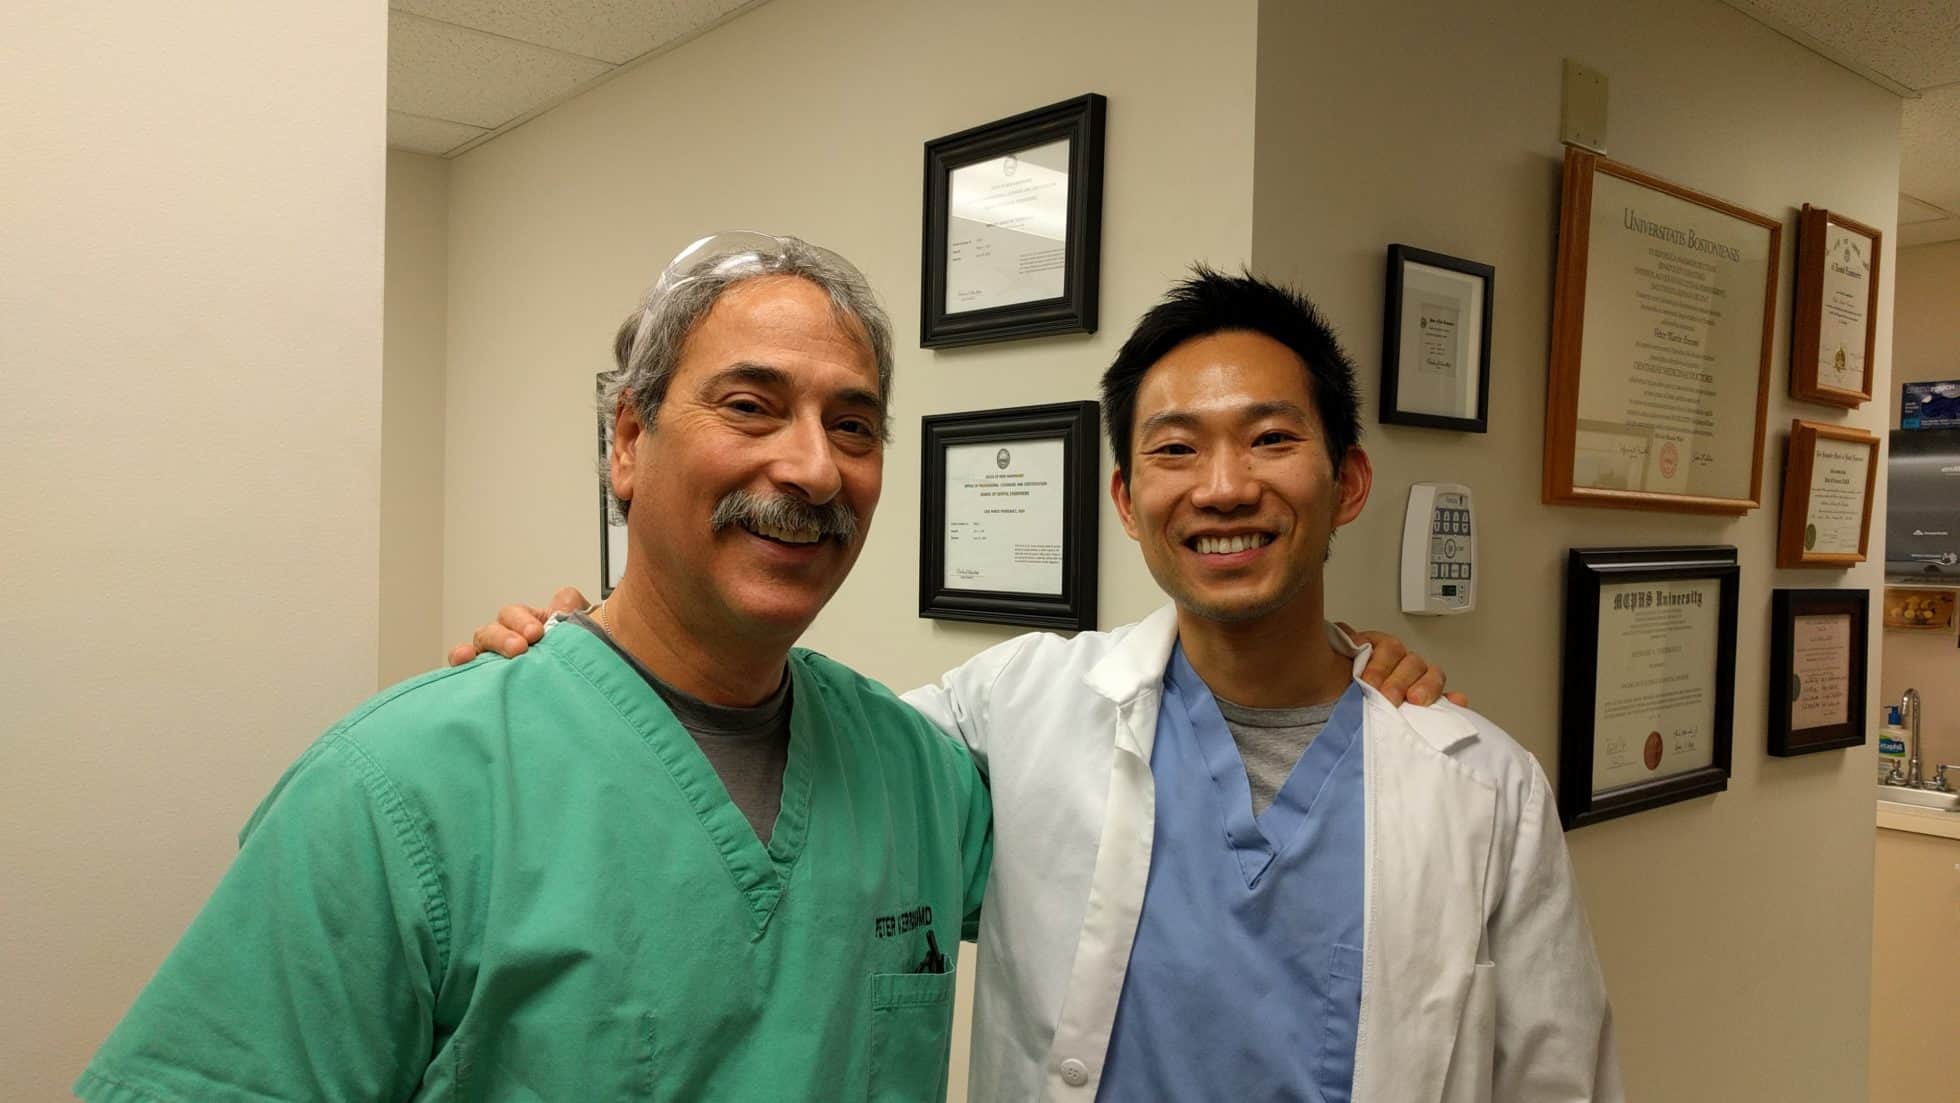 Dr. Cerroni and Dr. Lee